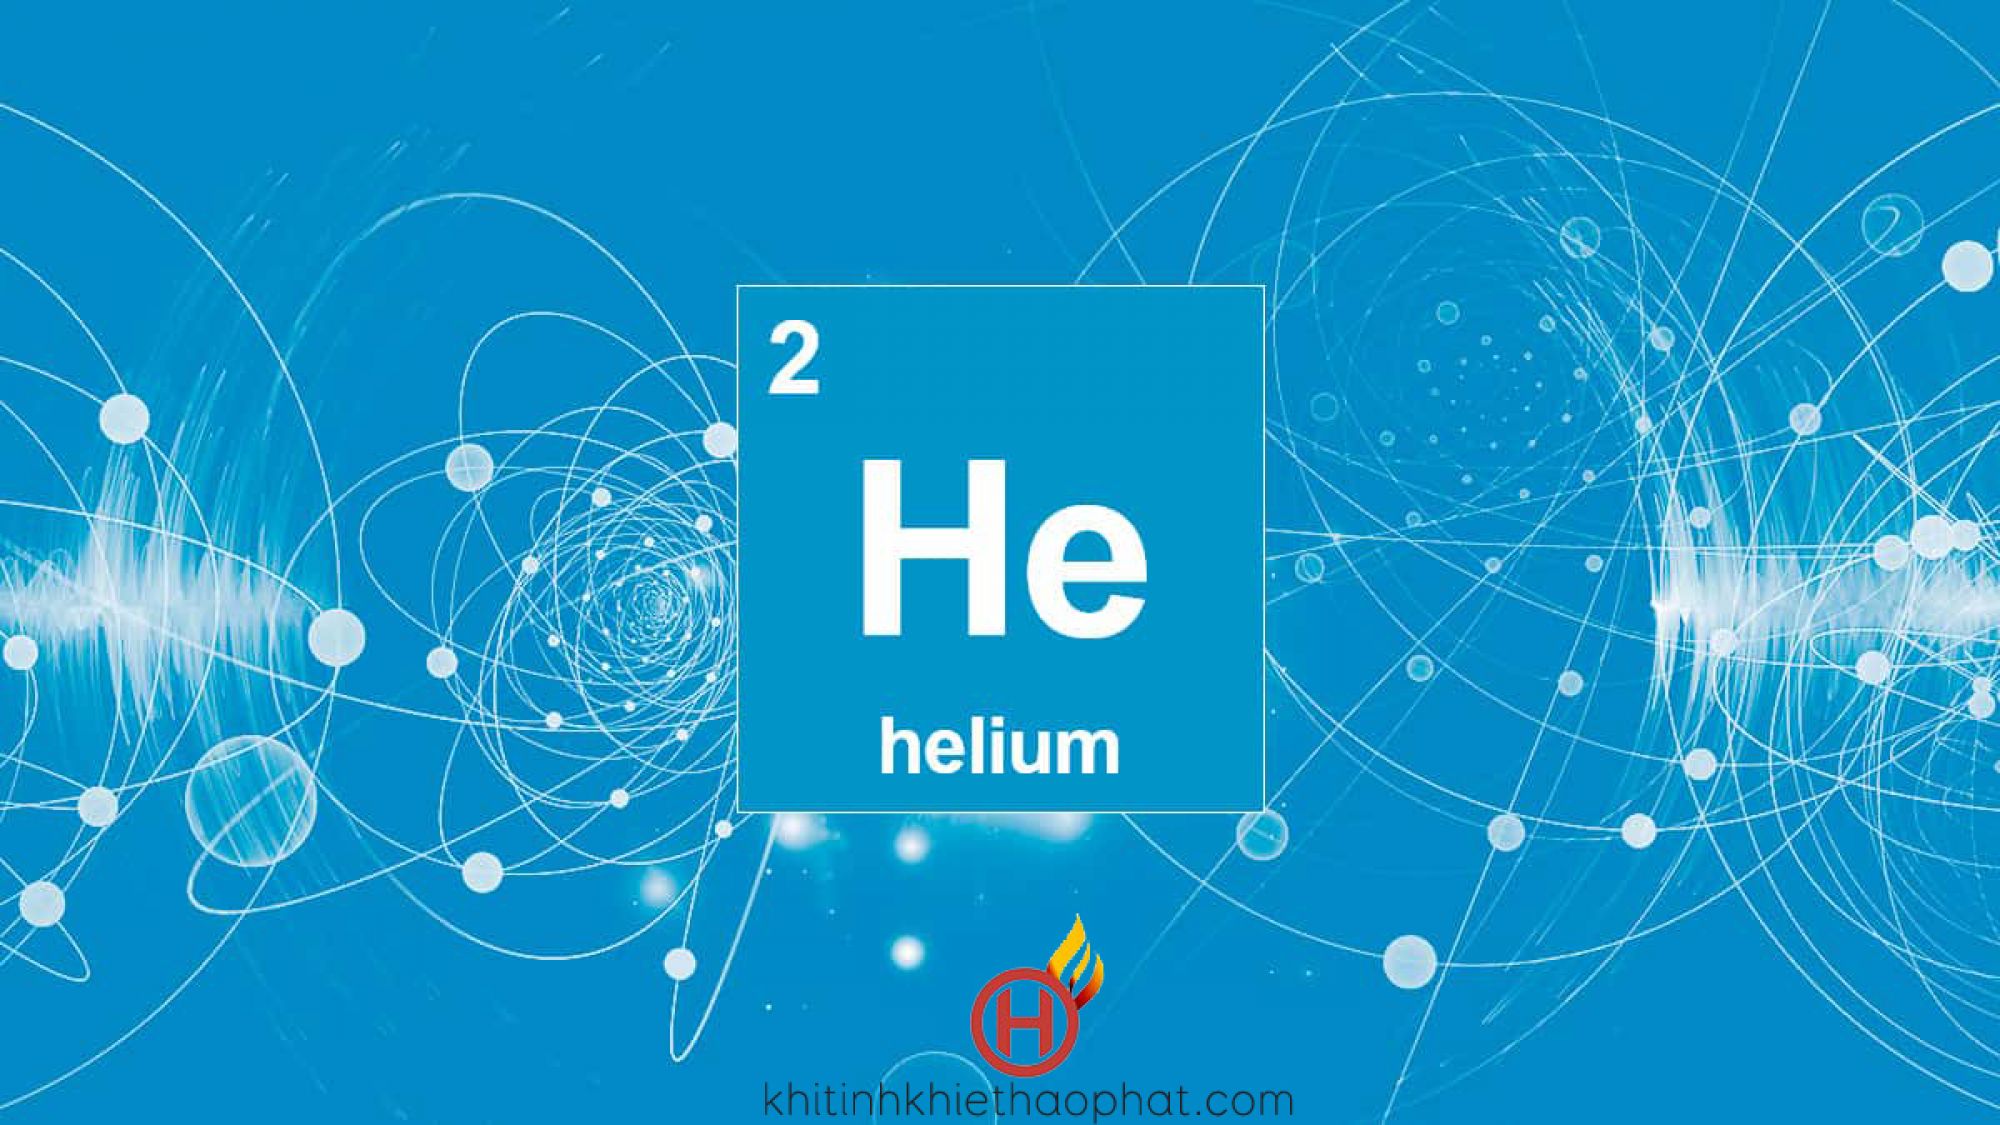 Tại sao khí helium lại quan trọng